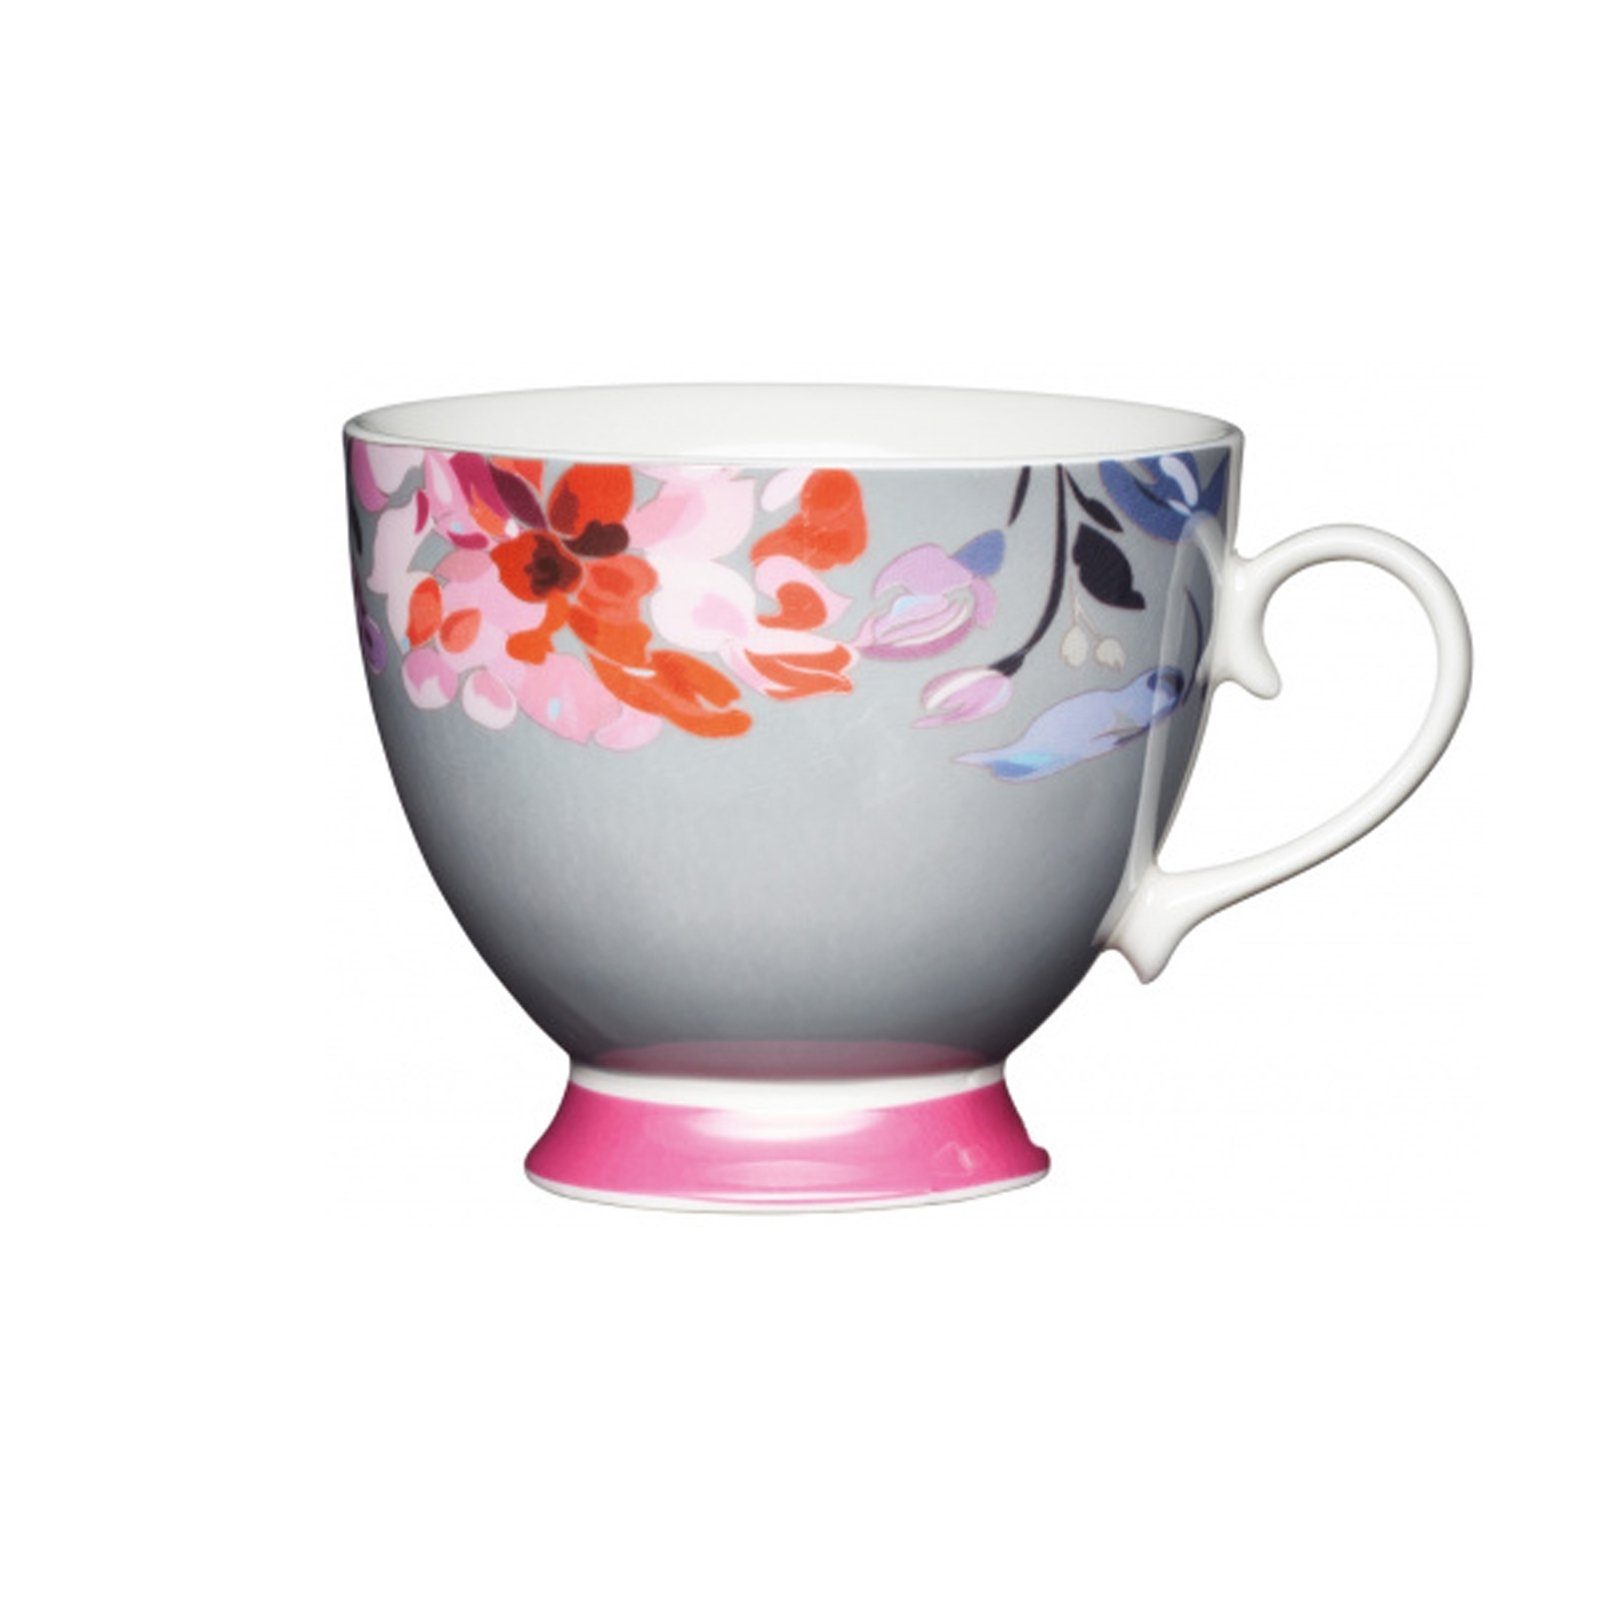 Tassen-Set, Tasse Grau Blumendekor geschwungene Form, 4-teilig, Neuetischkultur Porzellan